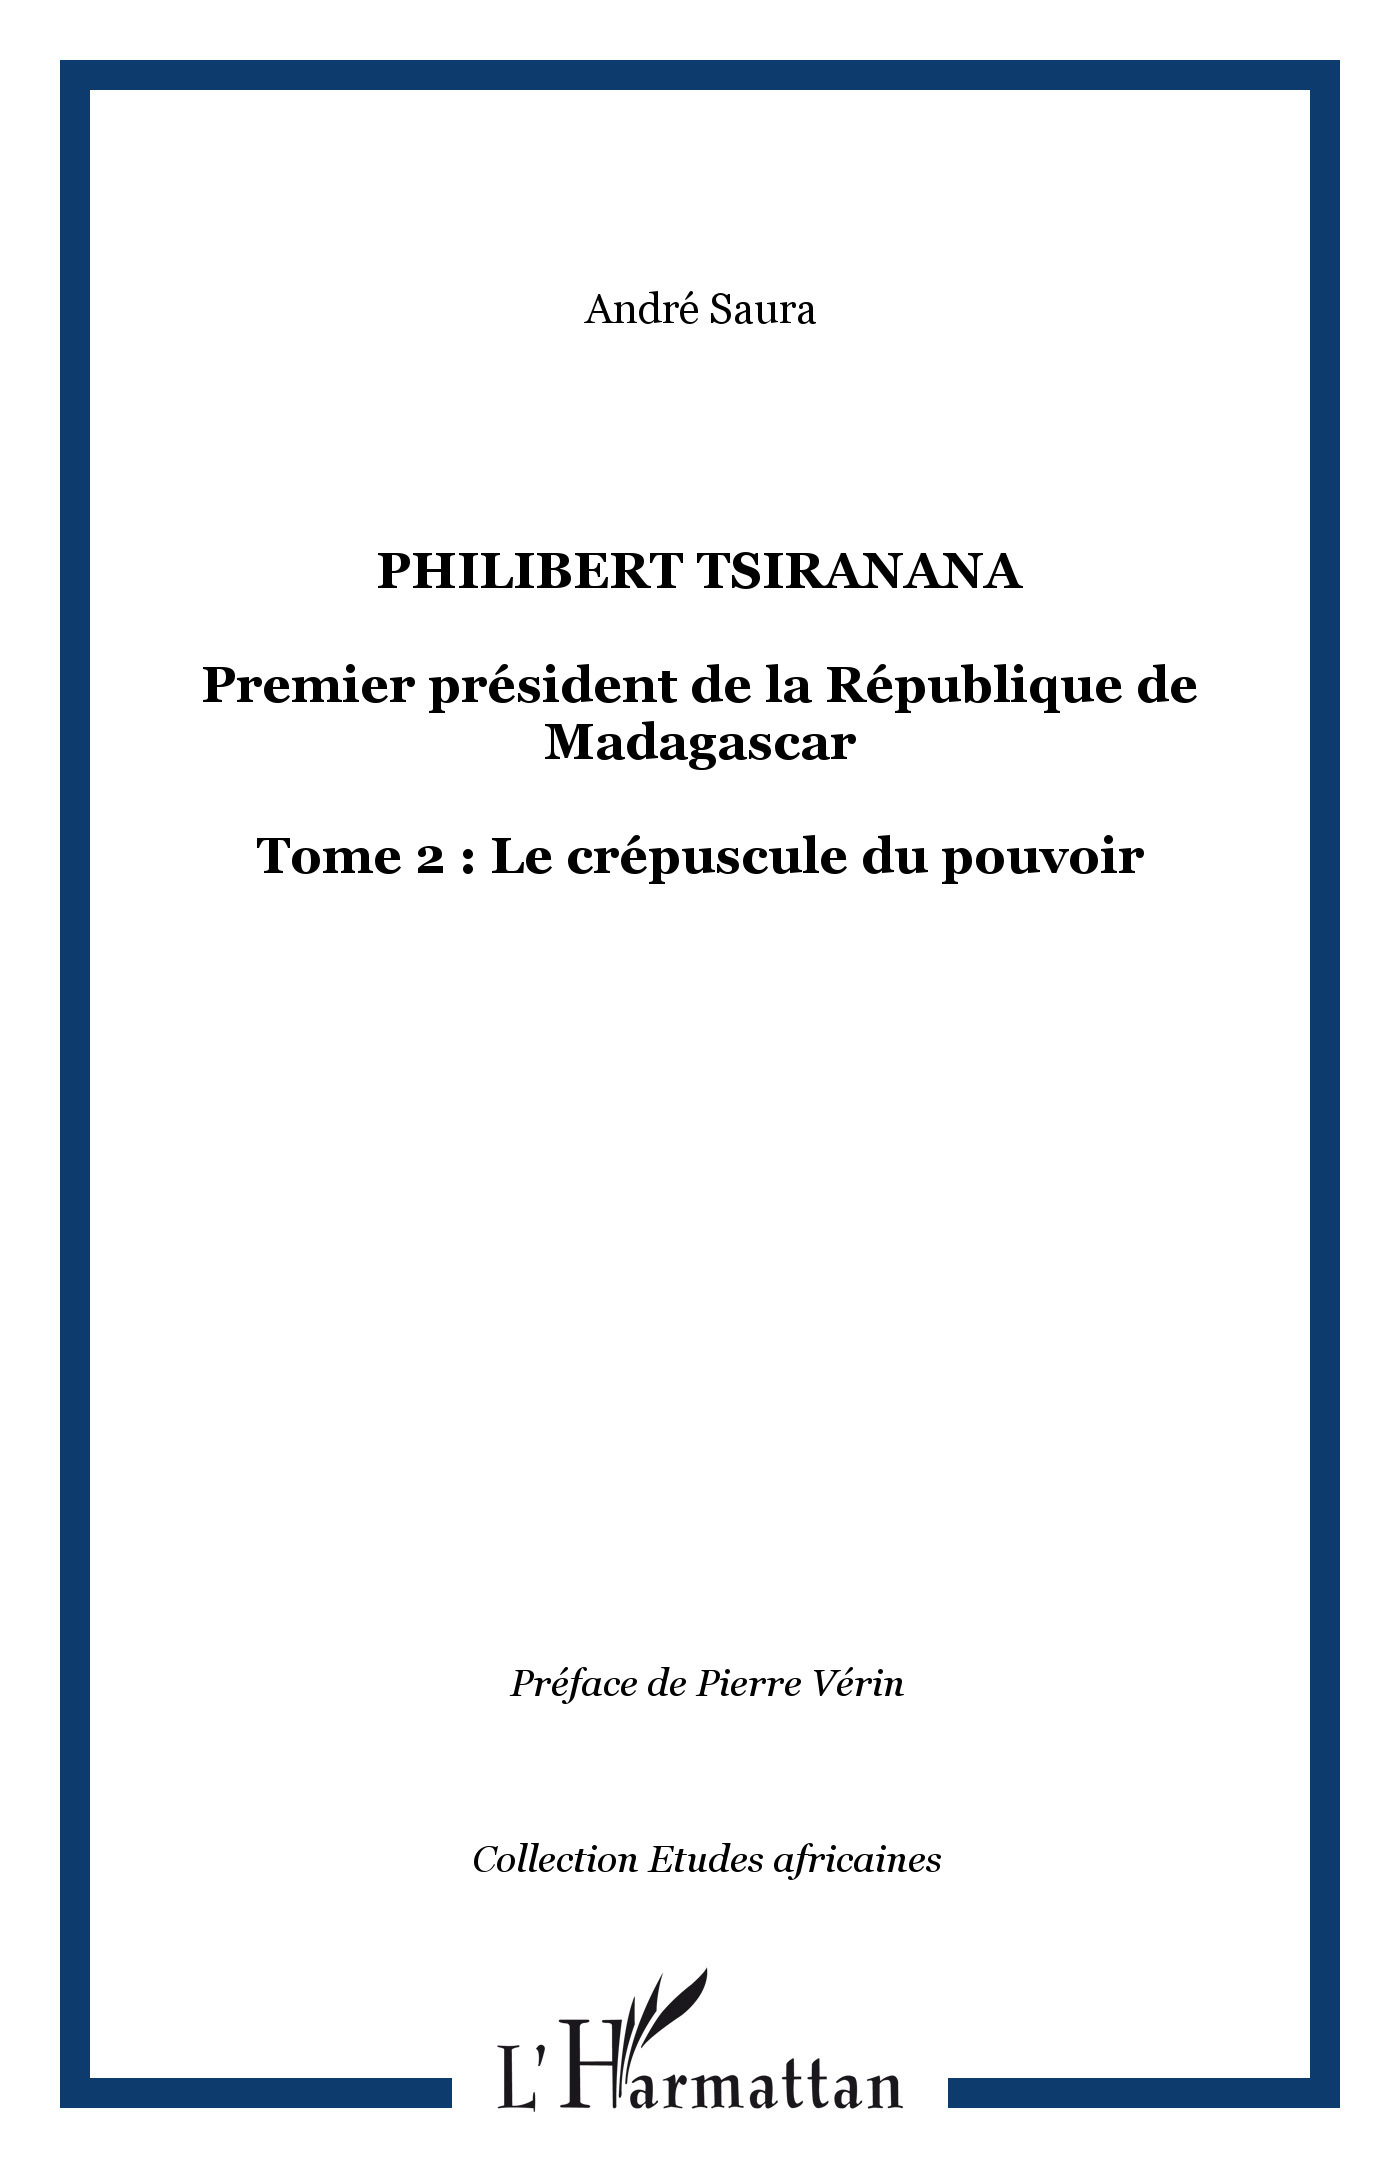 Philibert Tsiranana, Premier président de la République de Madagascar - Tome 2 : Le crépuscule du pouvoir (9782296013315-front-cover)